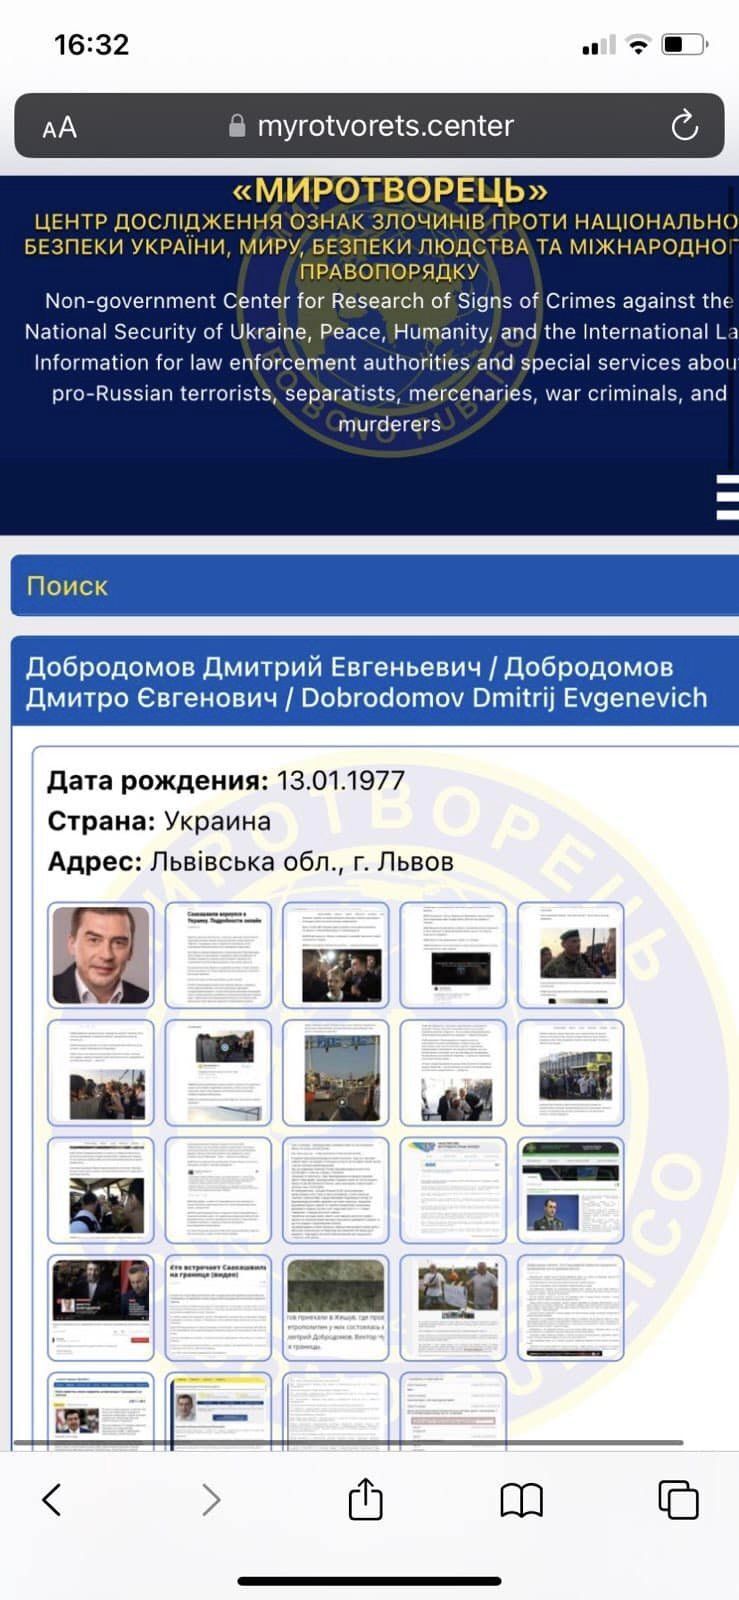 В антикоррупционный орган при МО метит экс-нардеп, работавший с российскими спецслужбами